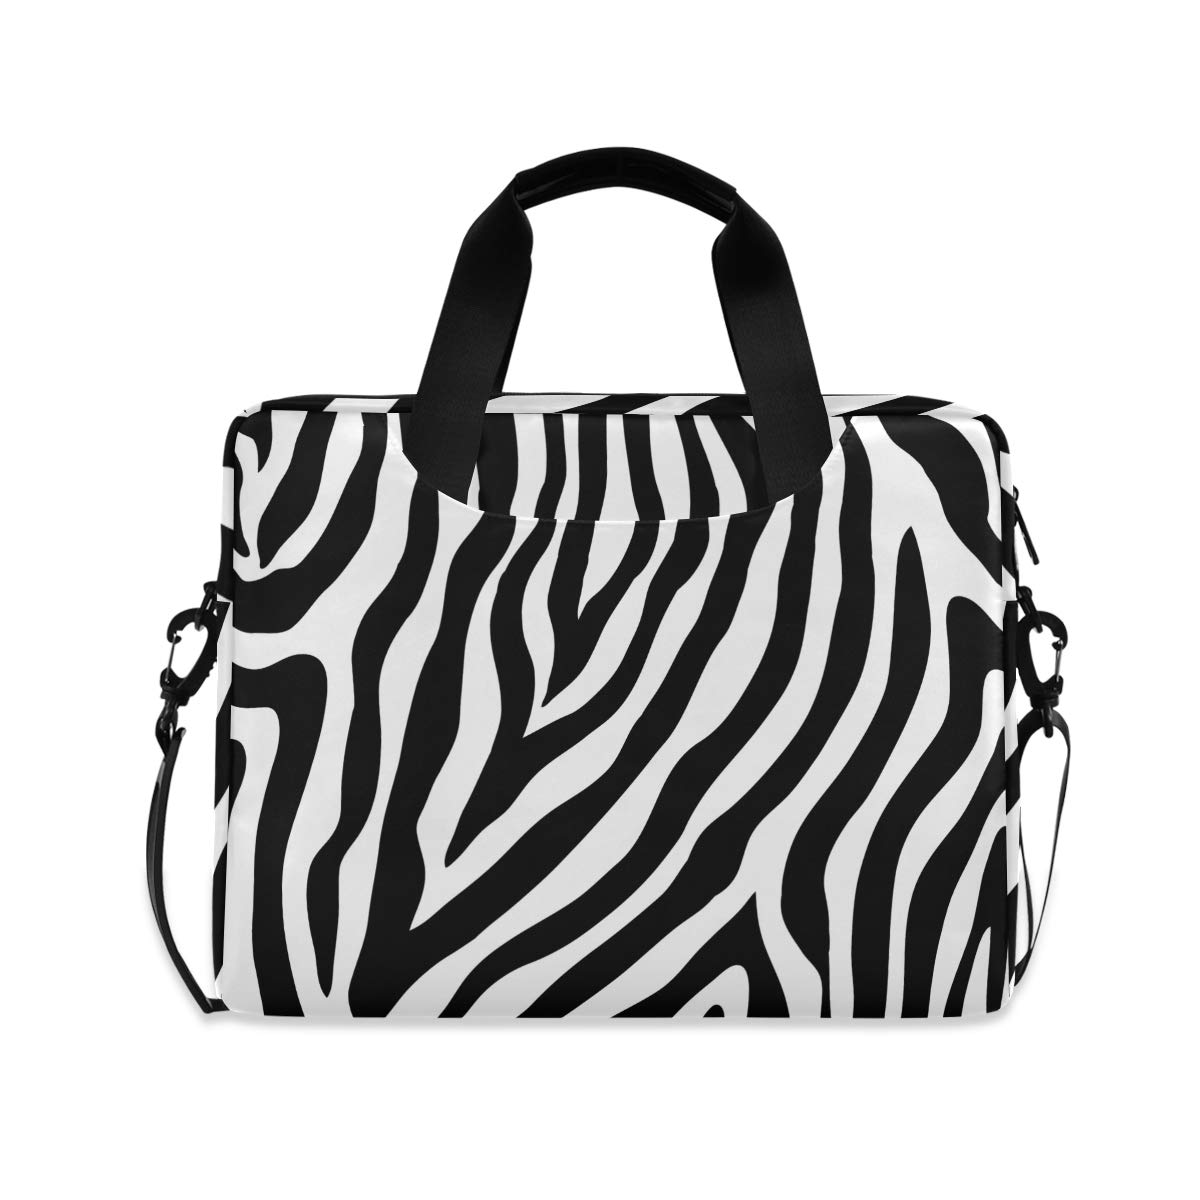 PUXUQU Abstrakt Tier Zebra Druck Laptoptasche 15.6 Zoll Laptop Tasche Aktentasche Hülle Notebooktasche Handtasche Schulter Tasche für Uni Arbeit Business